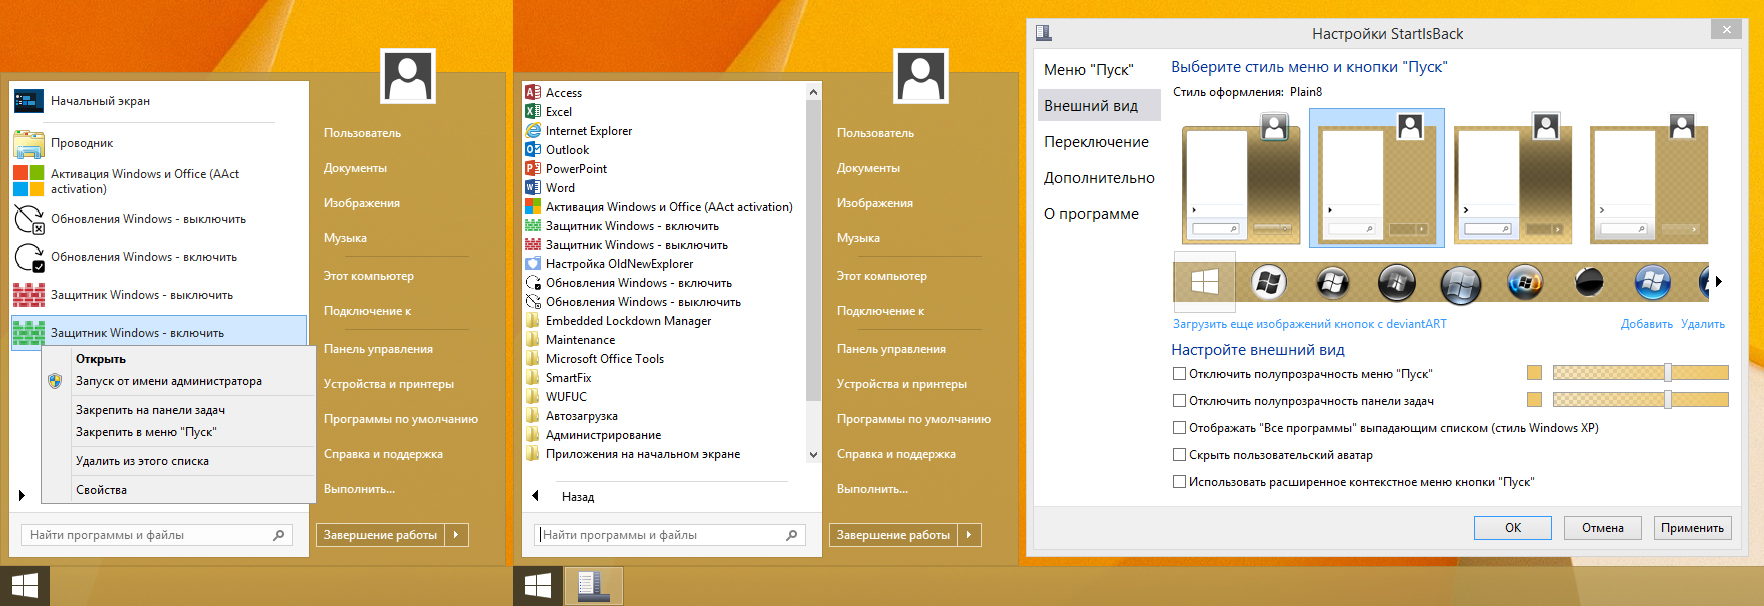 Windows 8.1 (x86/x64) 40in1 +/- Office 2021 by Eagle123 (07.2022) [Ru/En]